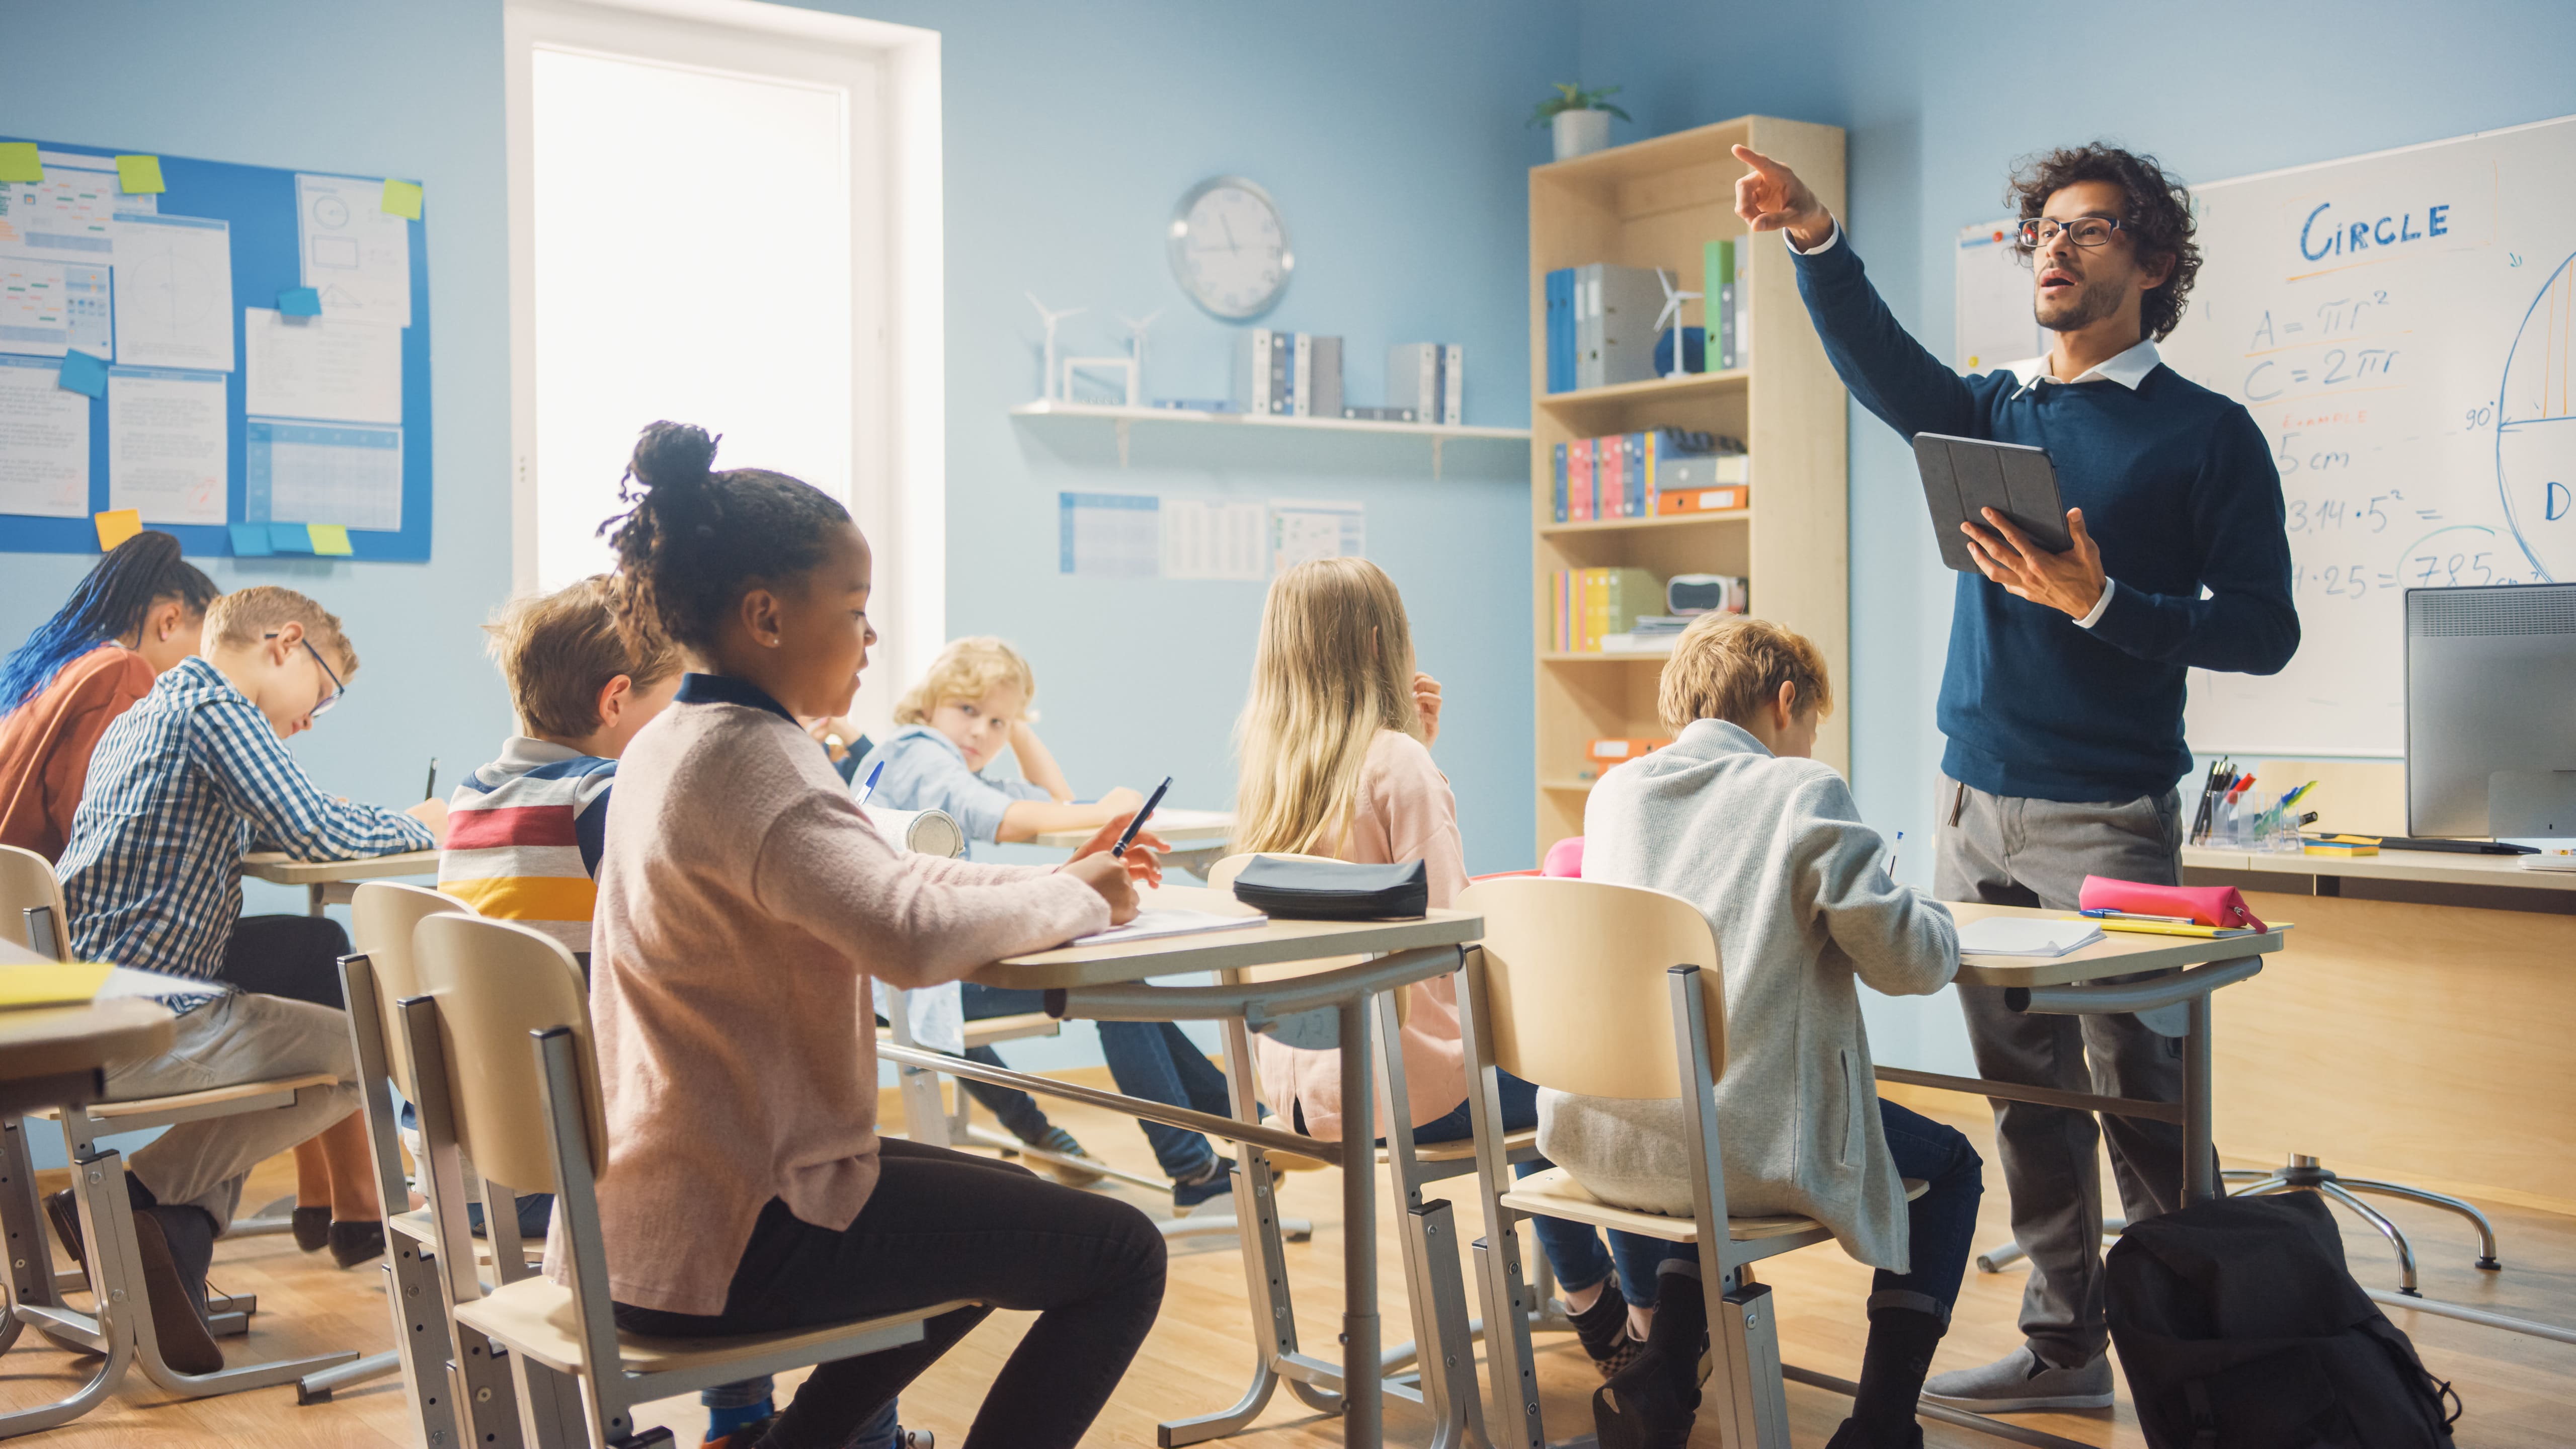 Você sabia que o Dom Bosco tem material didático do ensino infantil até o pré-vestibular? Conheça mais sobre cada um deles neste artigo.